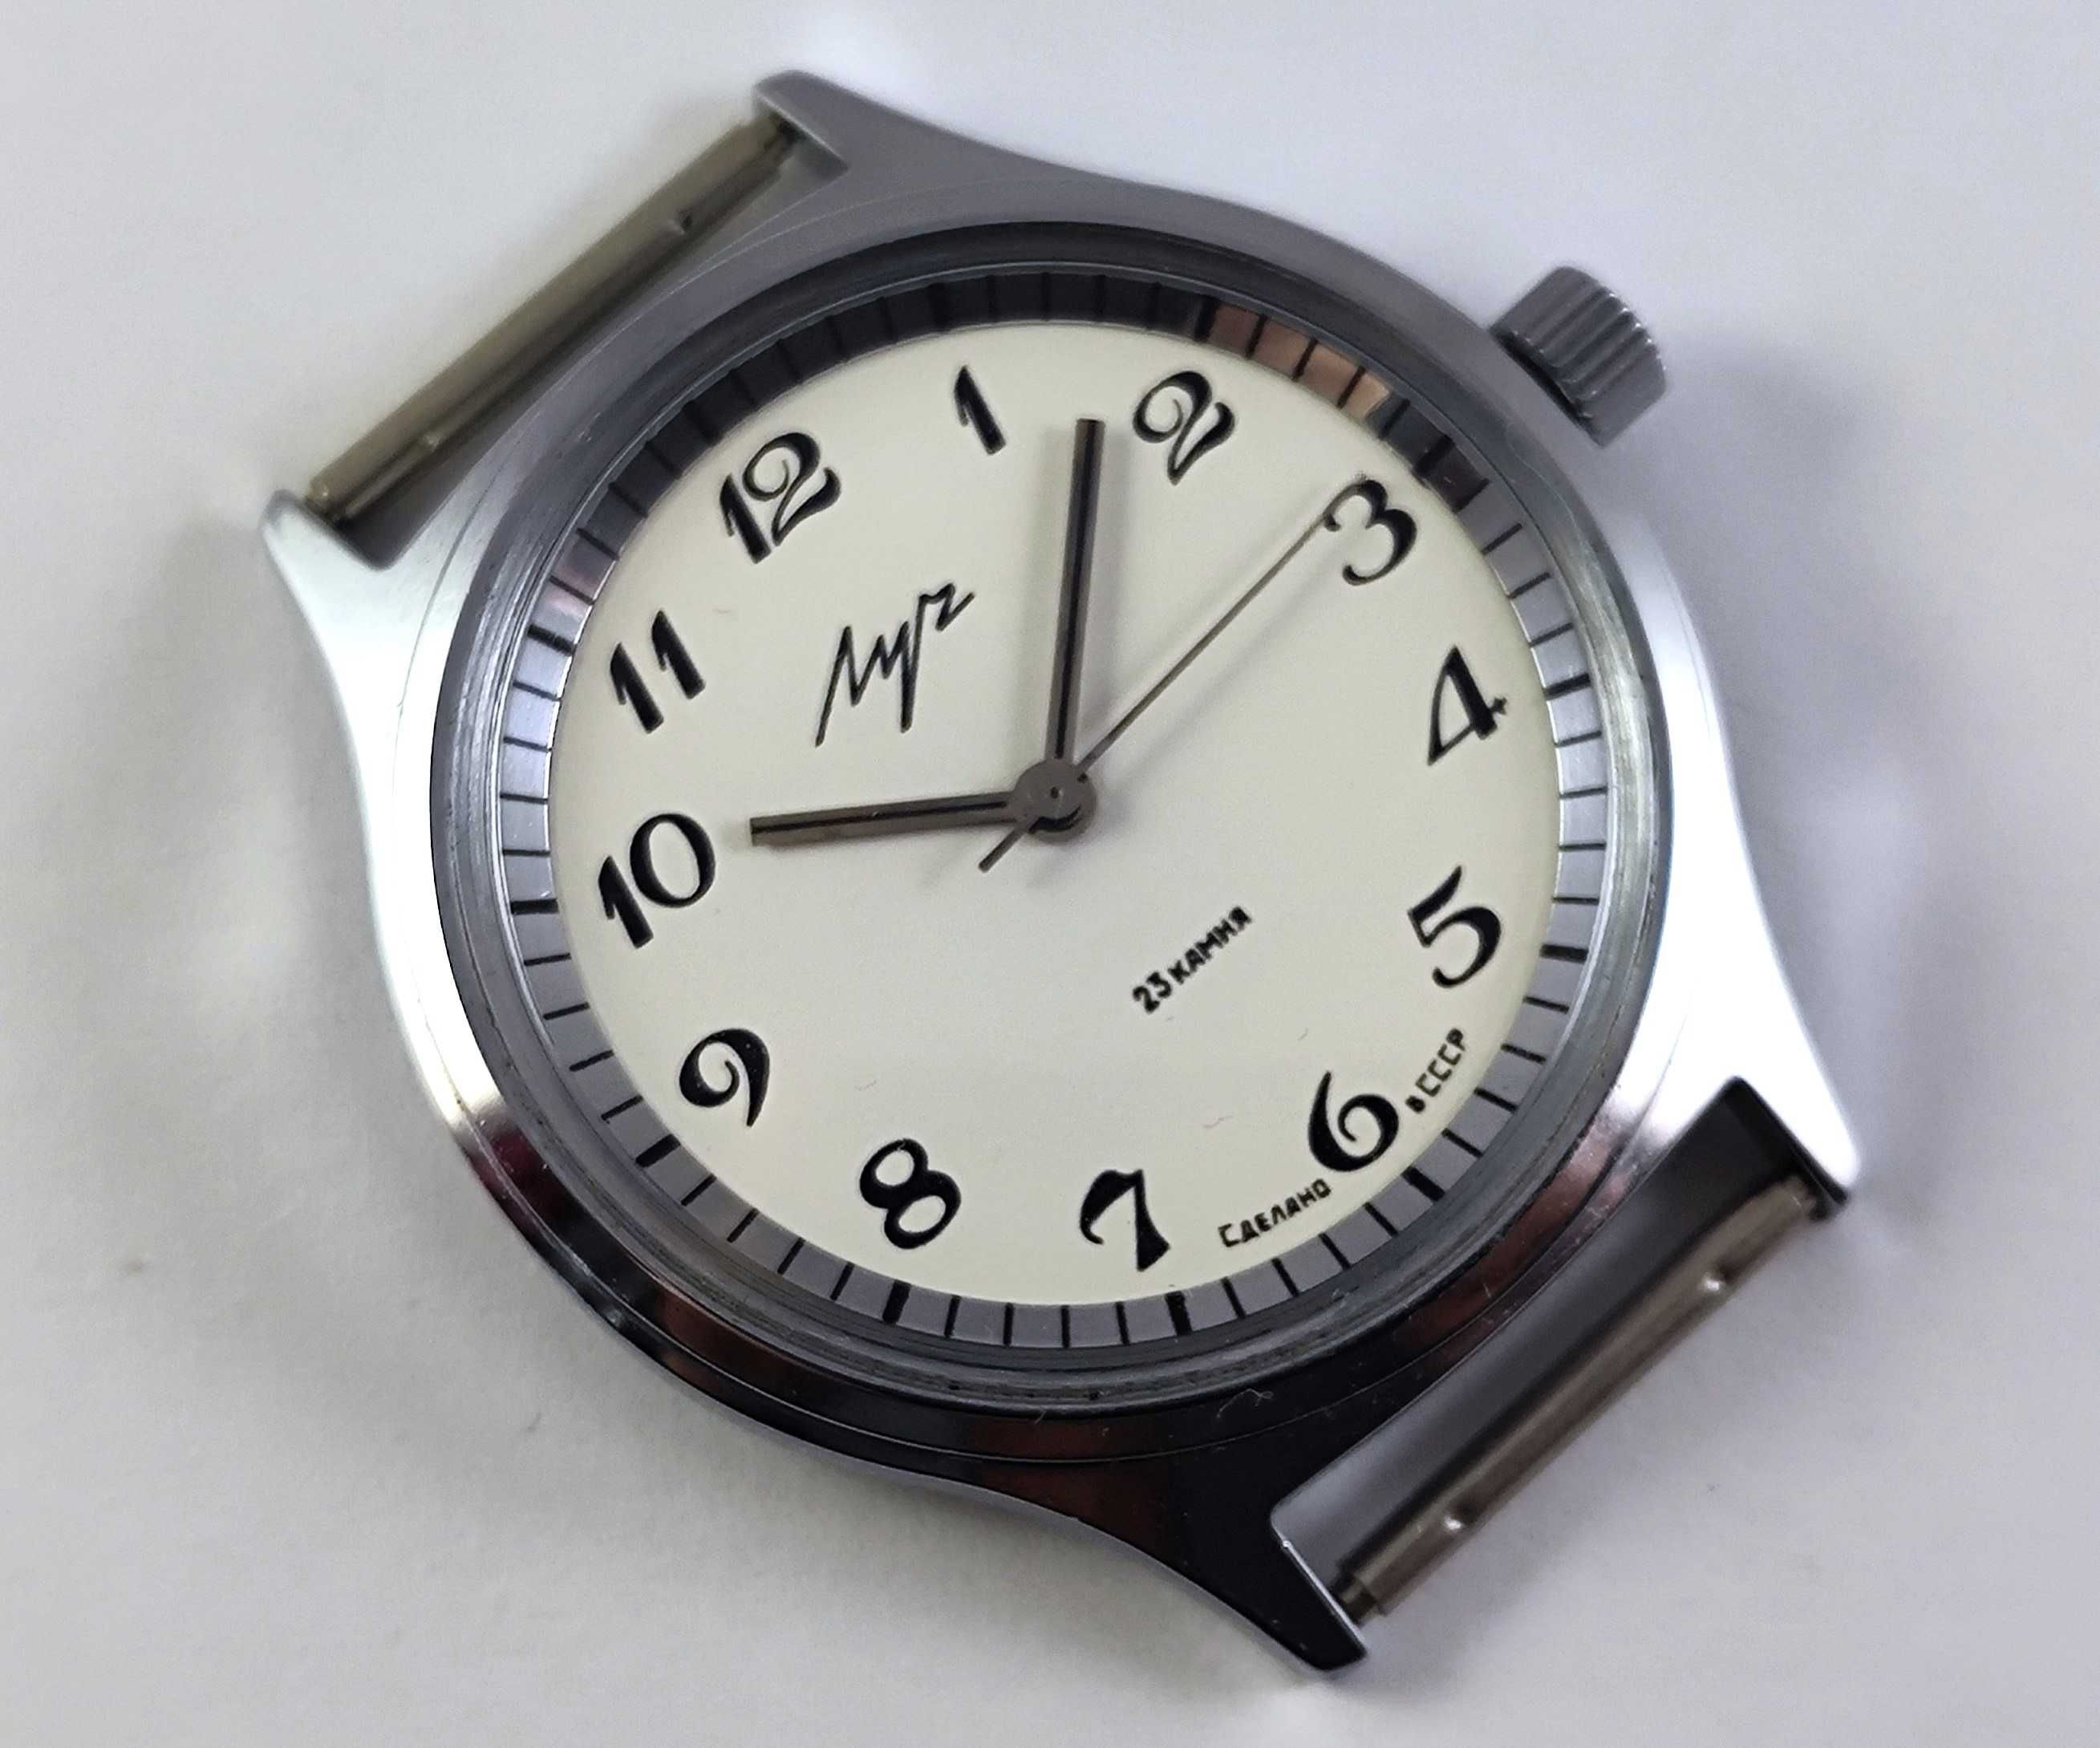 Новые часы Луч. Оригинал. СССР. Позолоченный 2209. Комплект. Документы